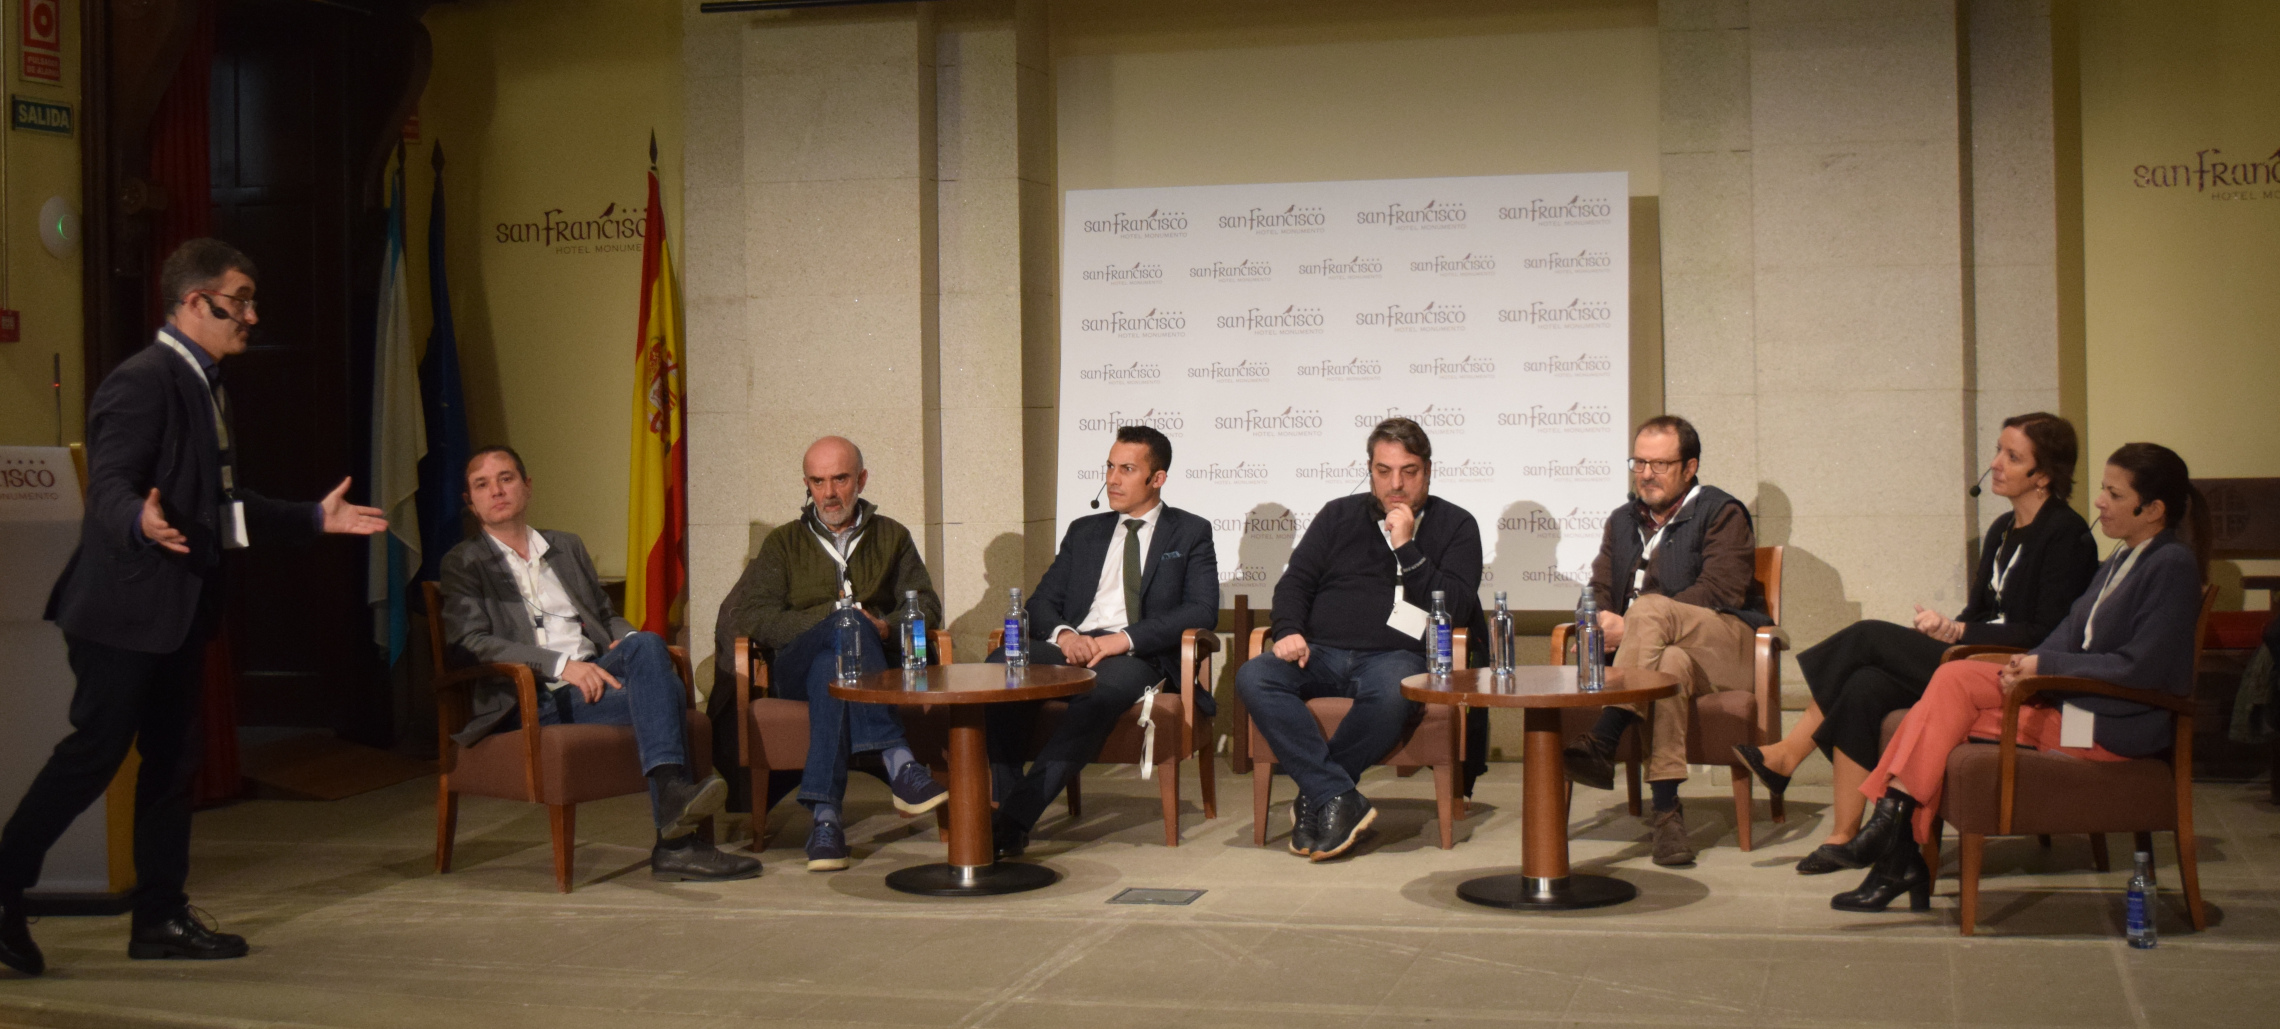 Retos para el futuro del vino en Galicia: Hablan 7 expertos